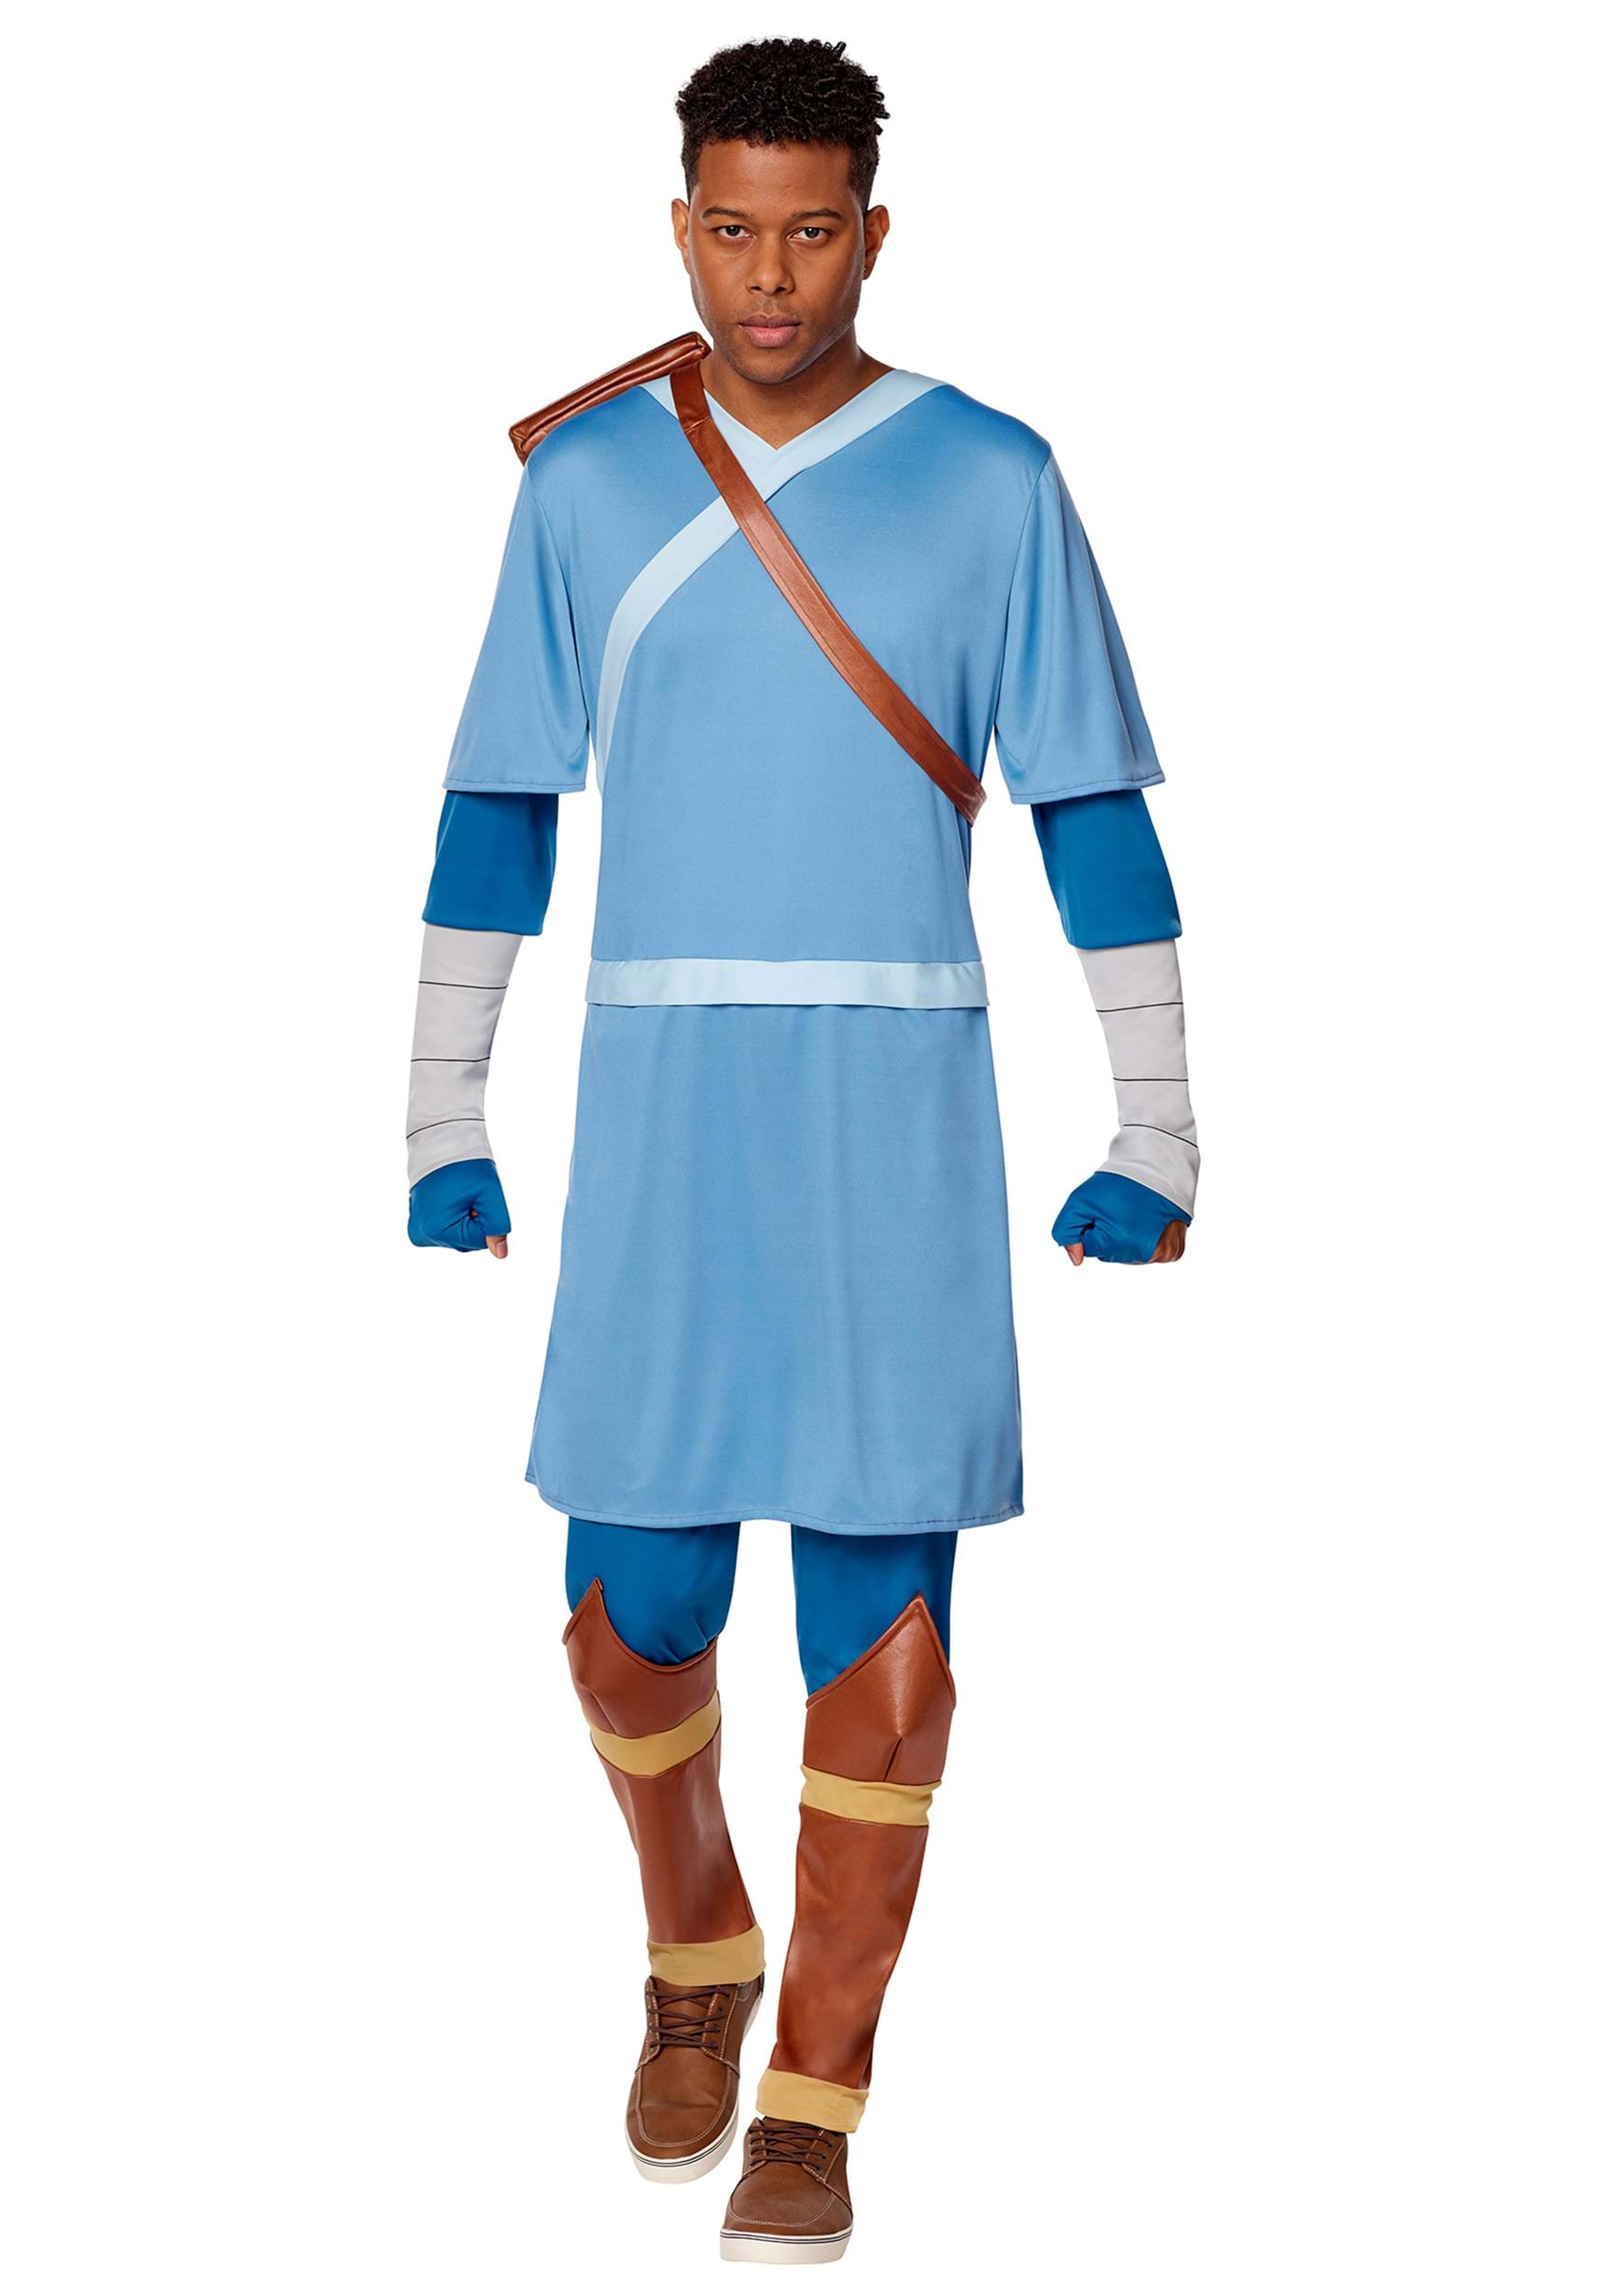 Avatar the Last Airbender Sokka Costume | Avatar Costume